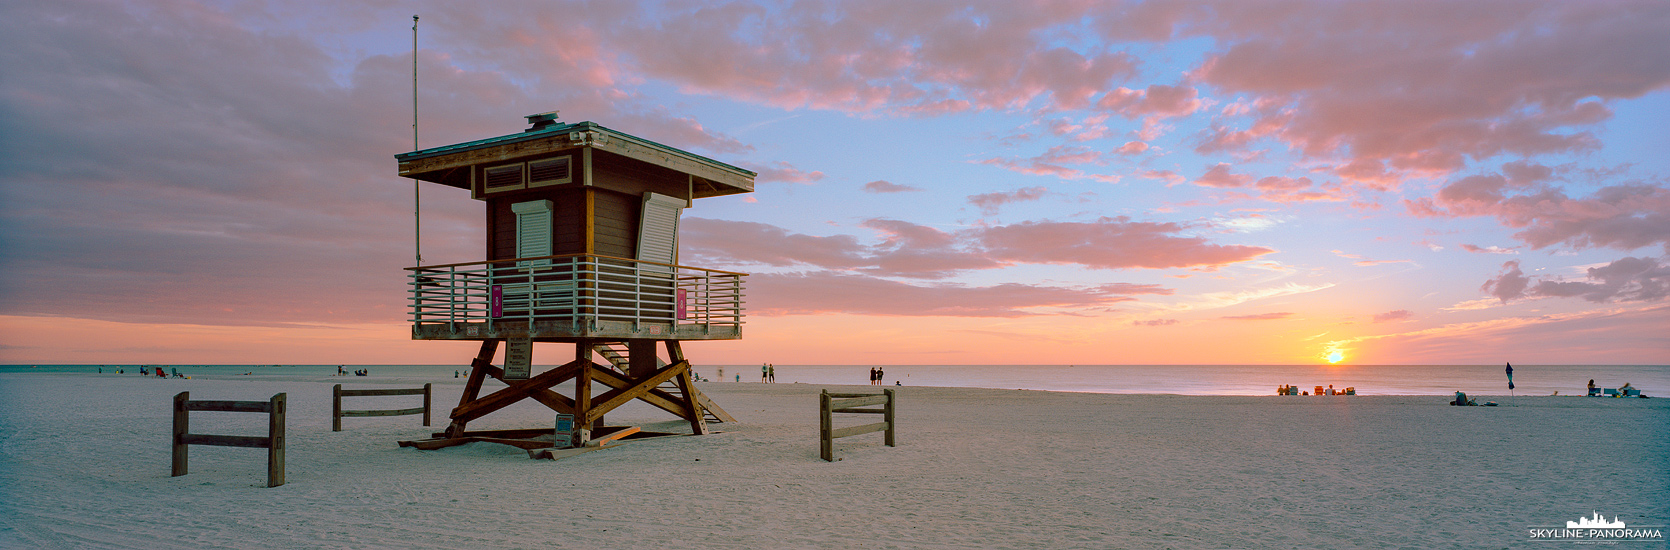 Panorama Florida - Sunset Beach Tower (p_01237)